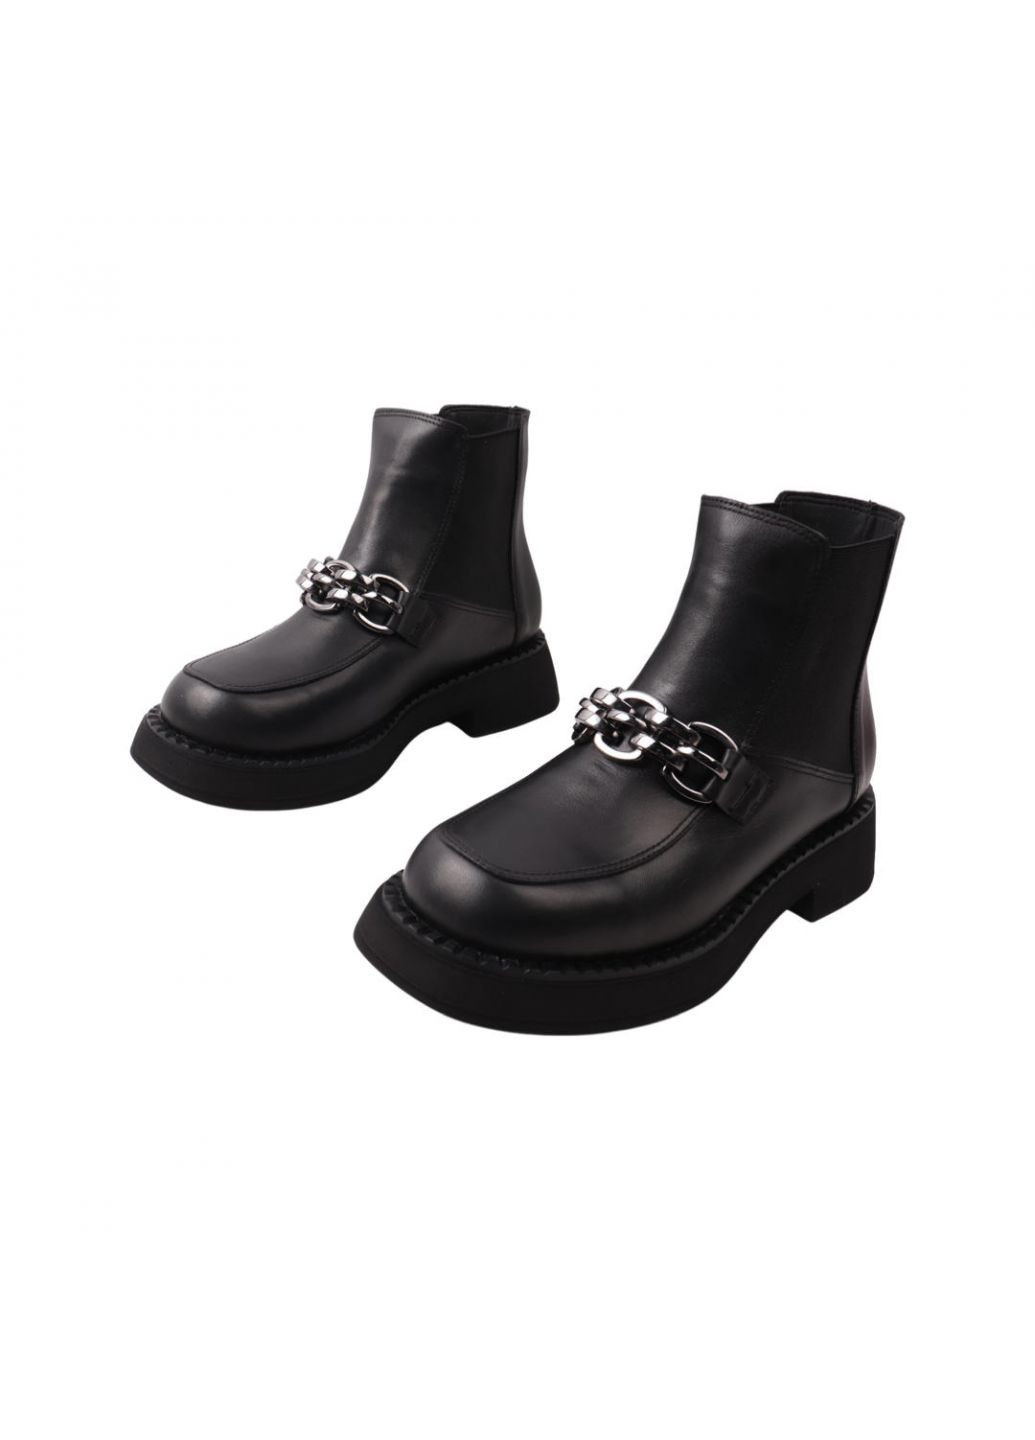 ботинки женские черные натуральная кожа EuroModa